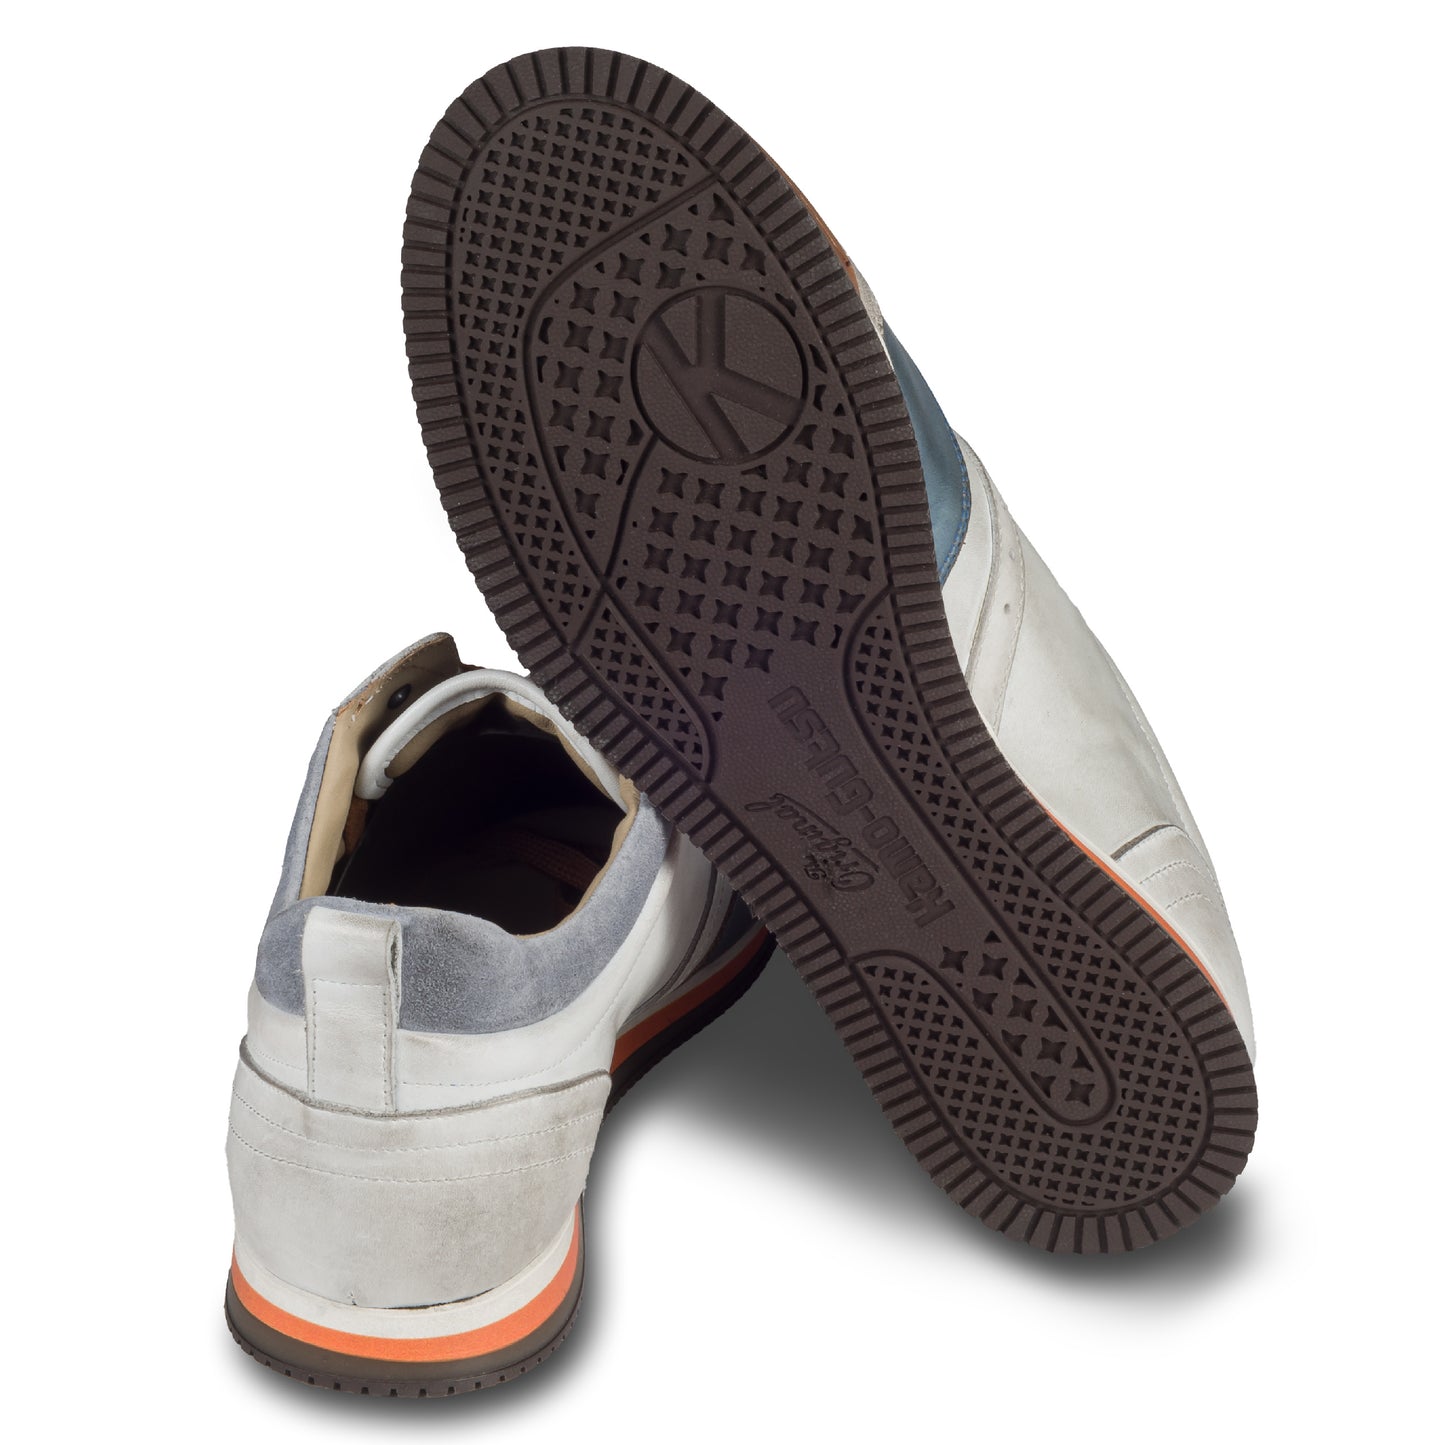 KAMO-GUTSU Herren Leder Sneaker weiß / grau / blau, Retro-Optik. Modell SCUDO-005 bianco combi. Handgefertigt in Italien. Ansicht der Ferse und Sohlenunterseite. 